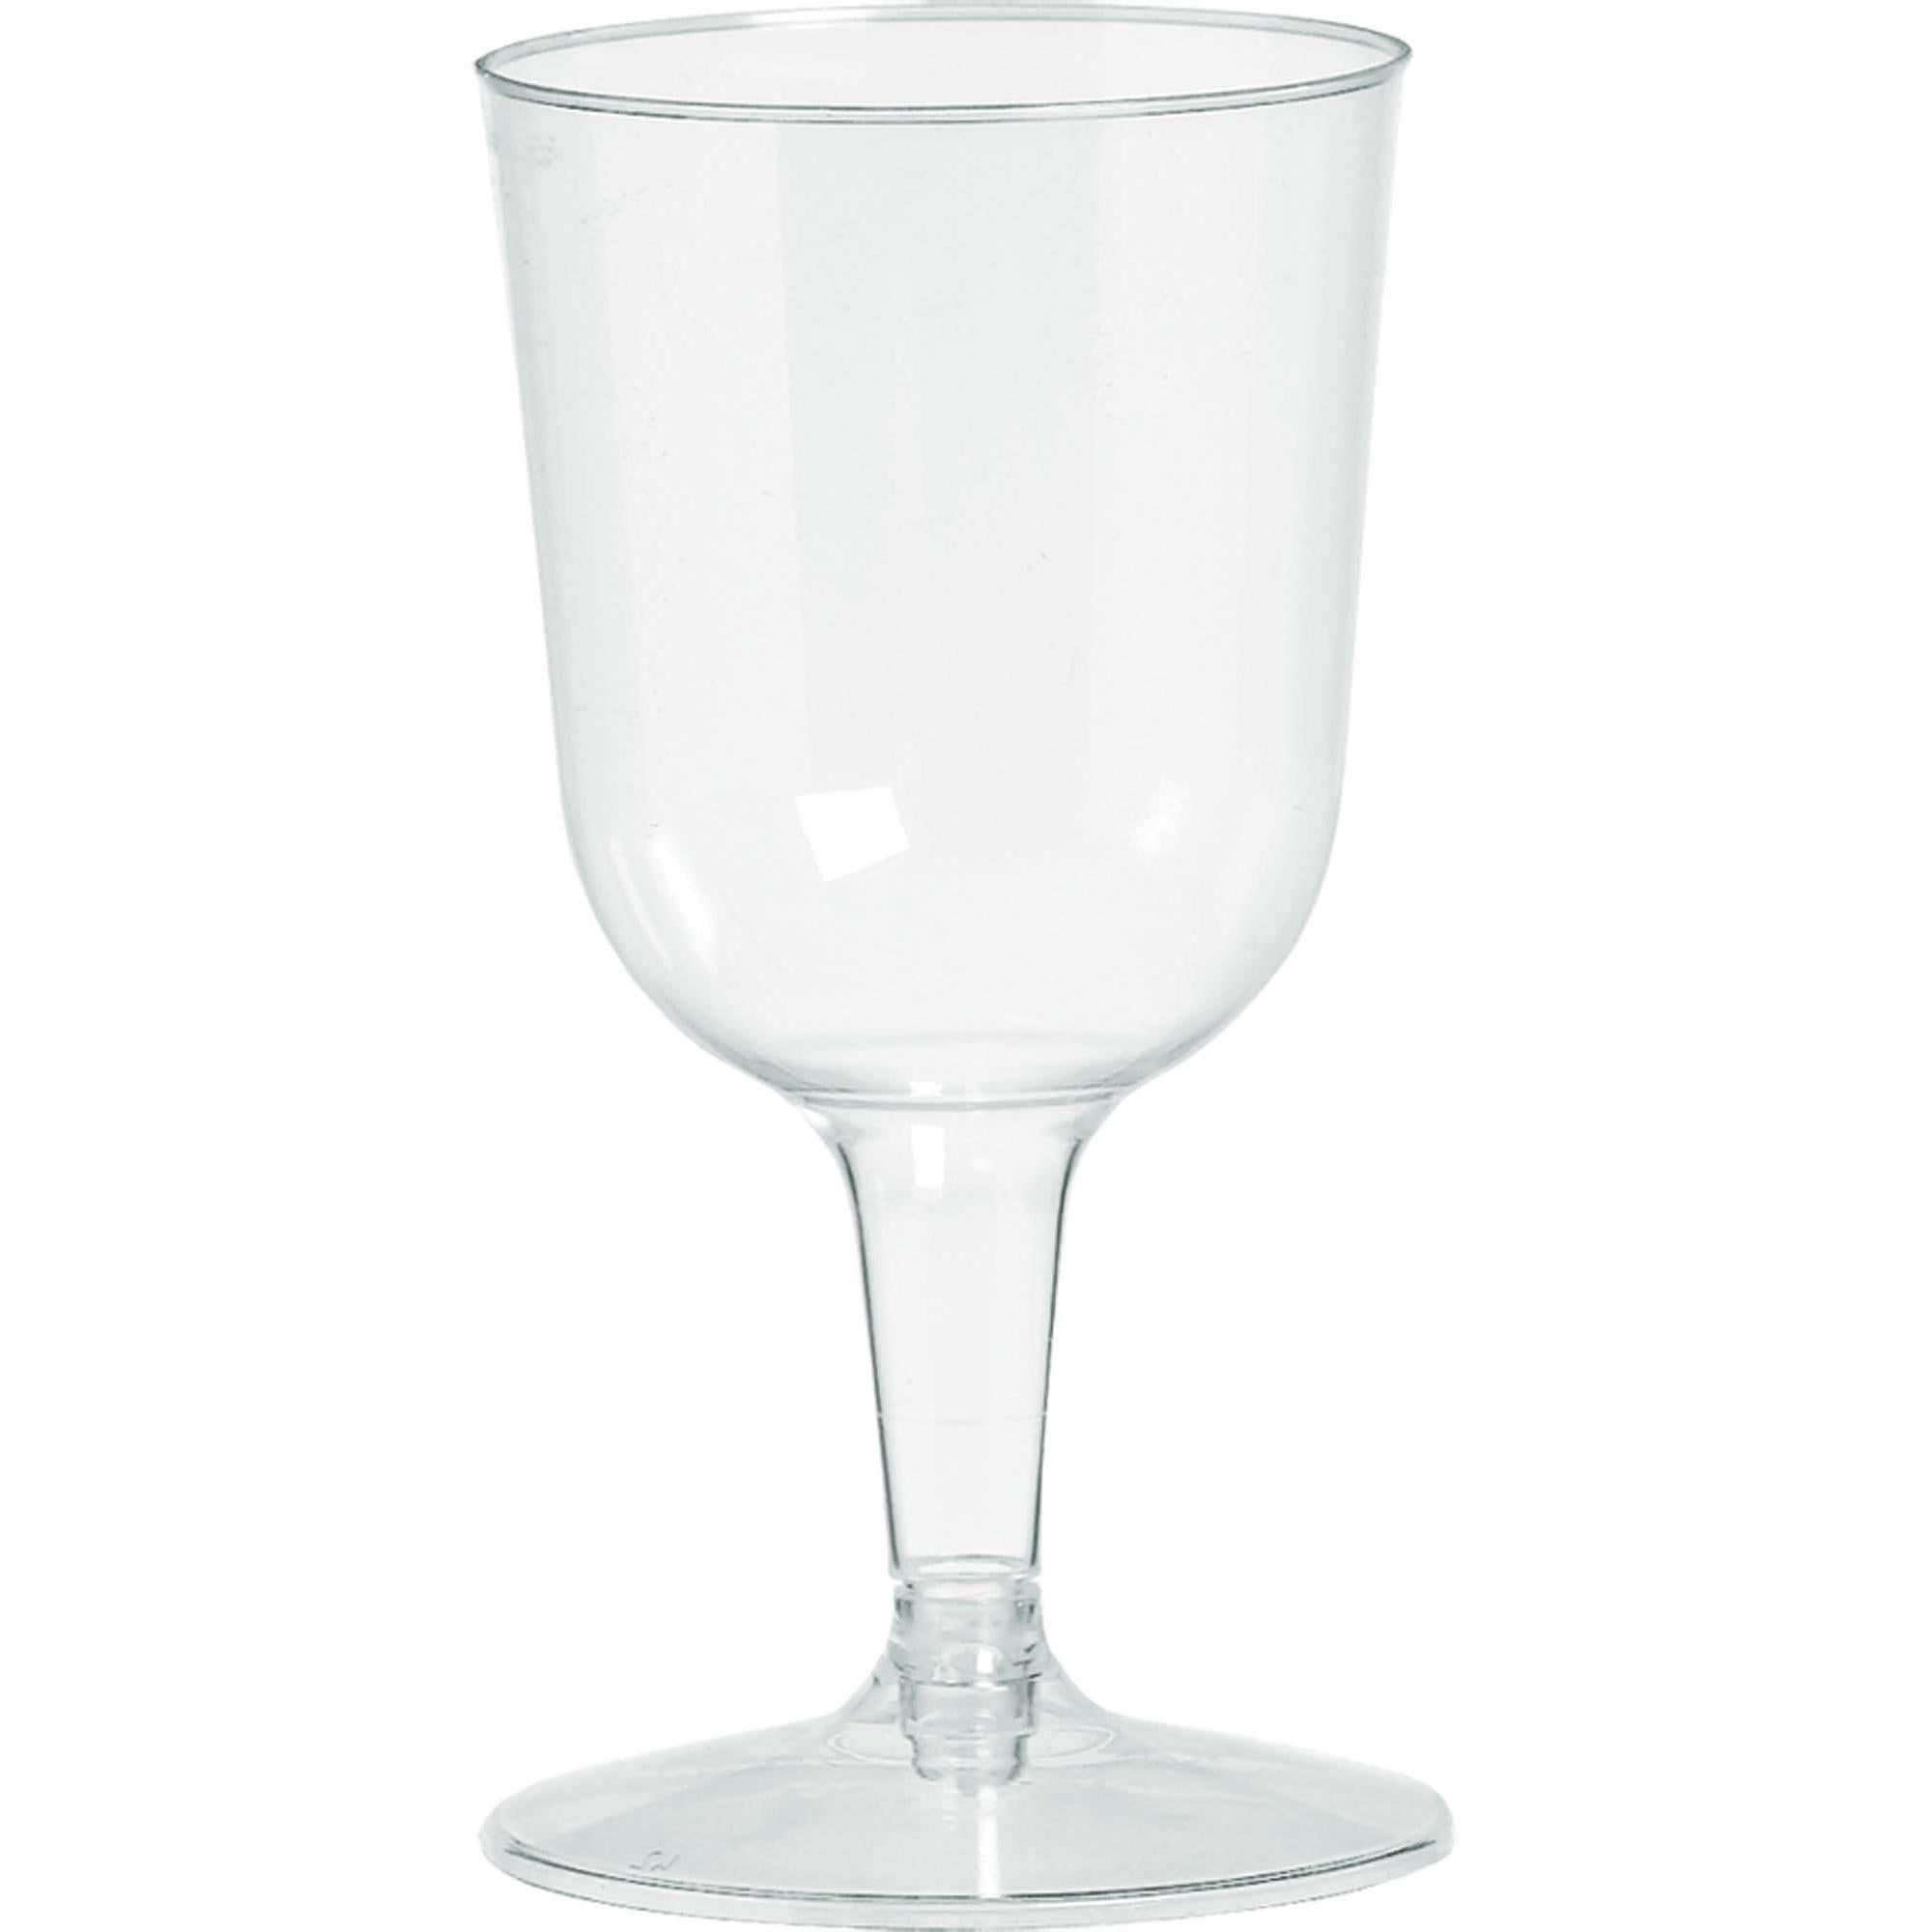 Clear Plastic Wine Glasses 5.5oz, 32pcs